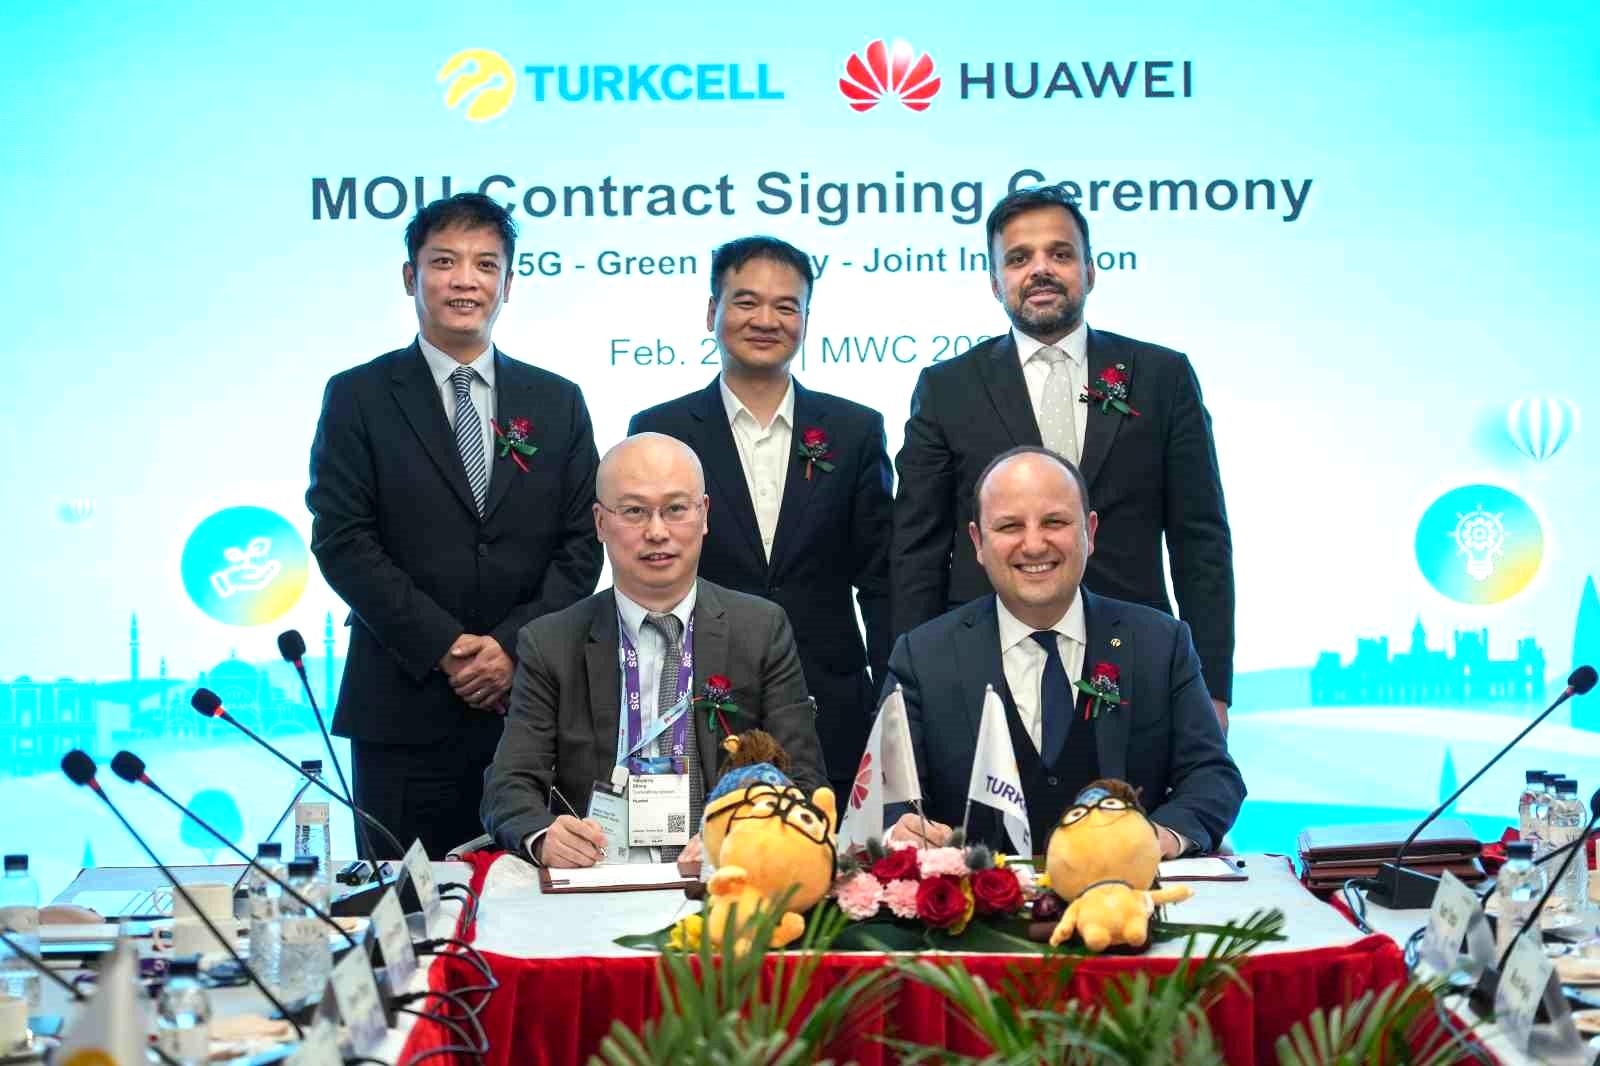 Turkcell ve Huawei’den gelecek nesil teknolojiler için iş birliği